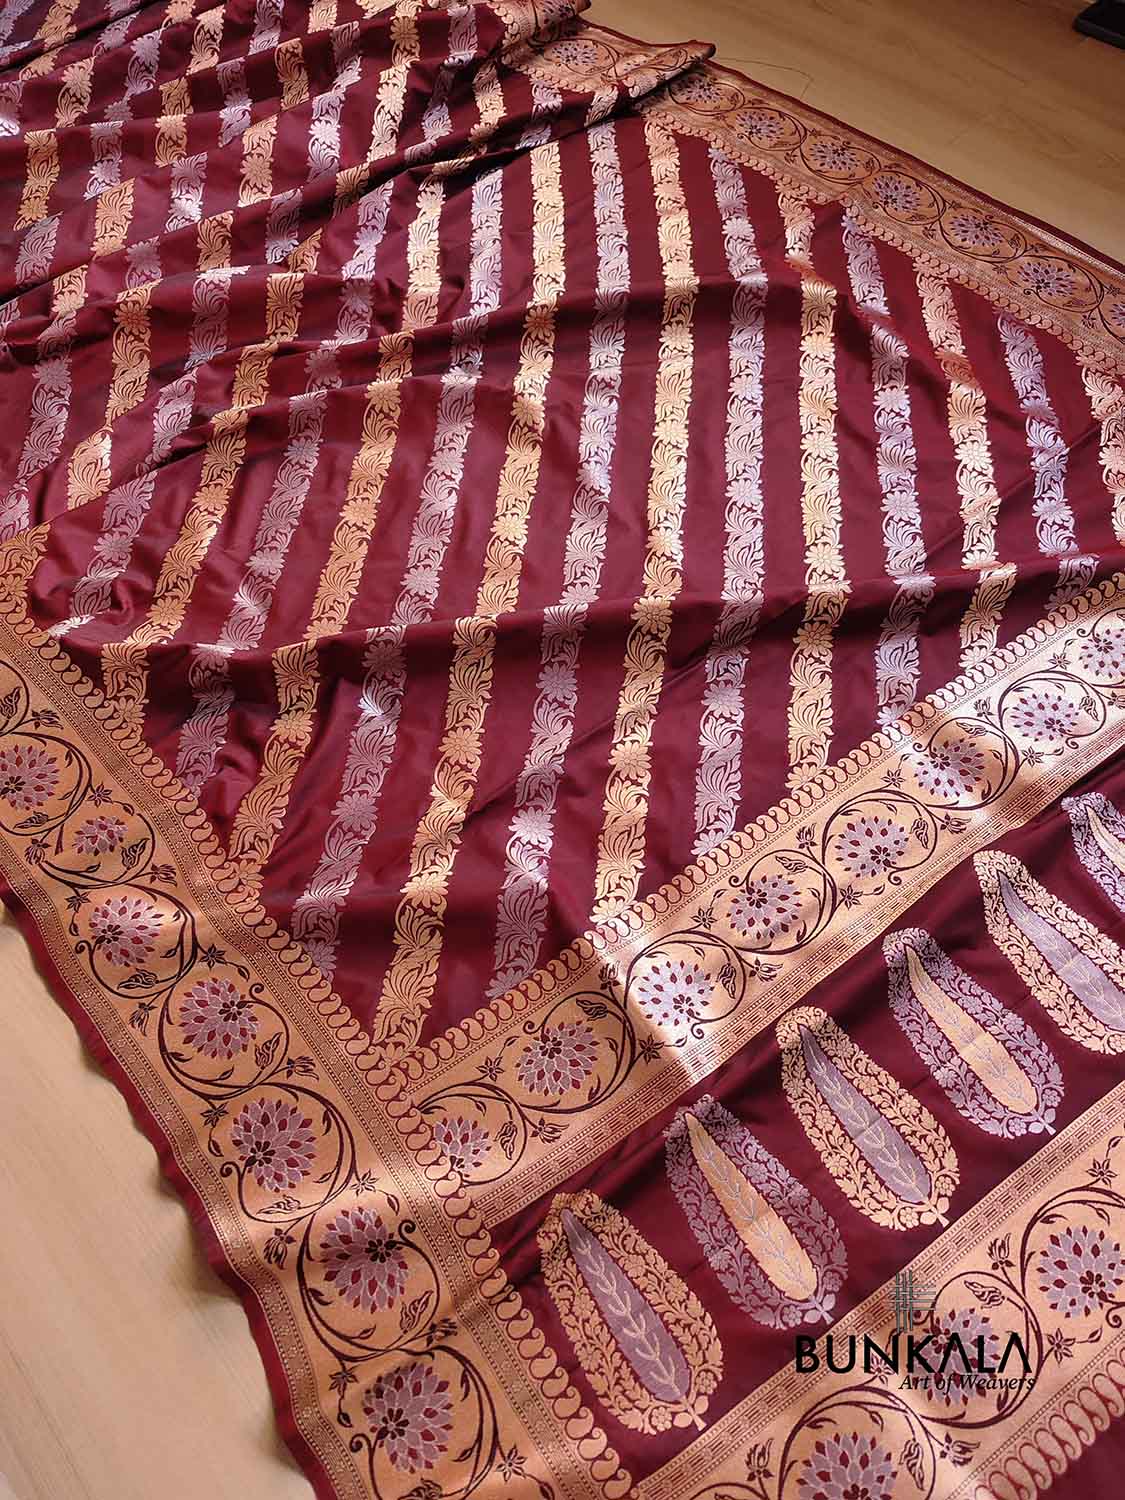 Dark Maroon Striped Design Sona Rupa Silk Banarasi Saree